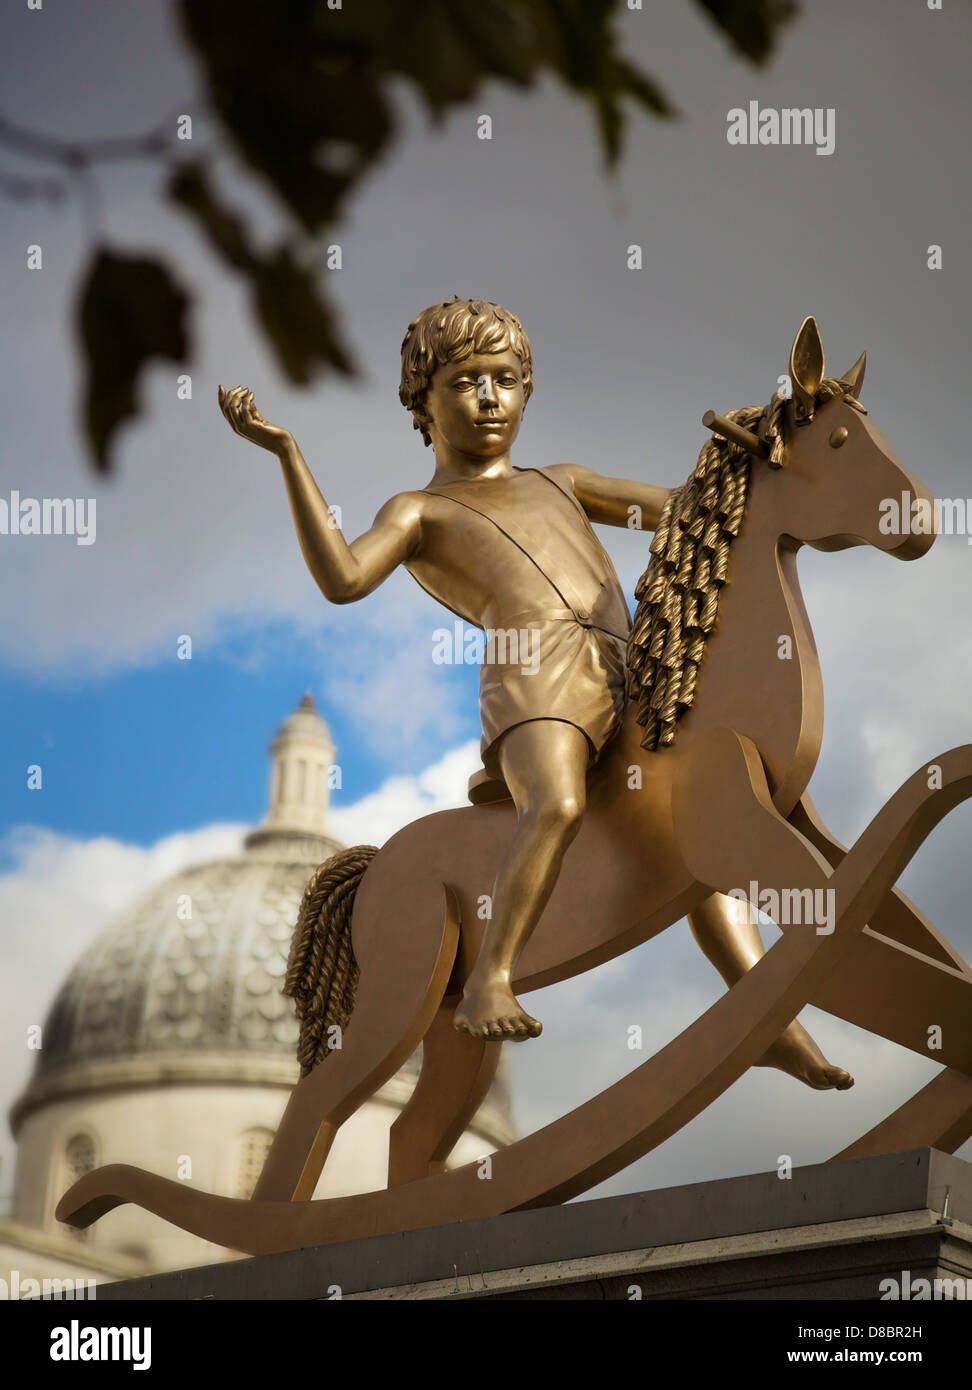 Der junge auf dem Schaukelpferd, Trafalgar Square, London, UK. Stockfoto